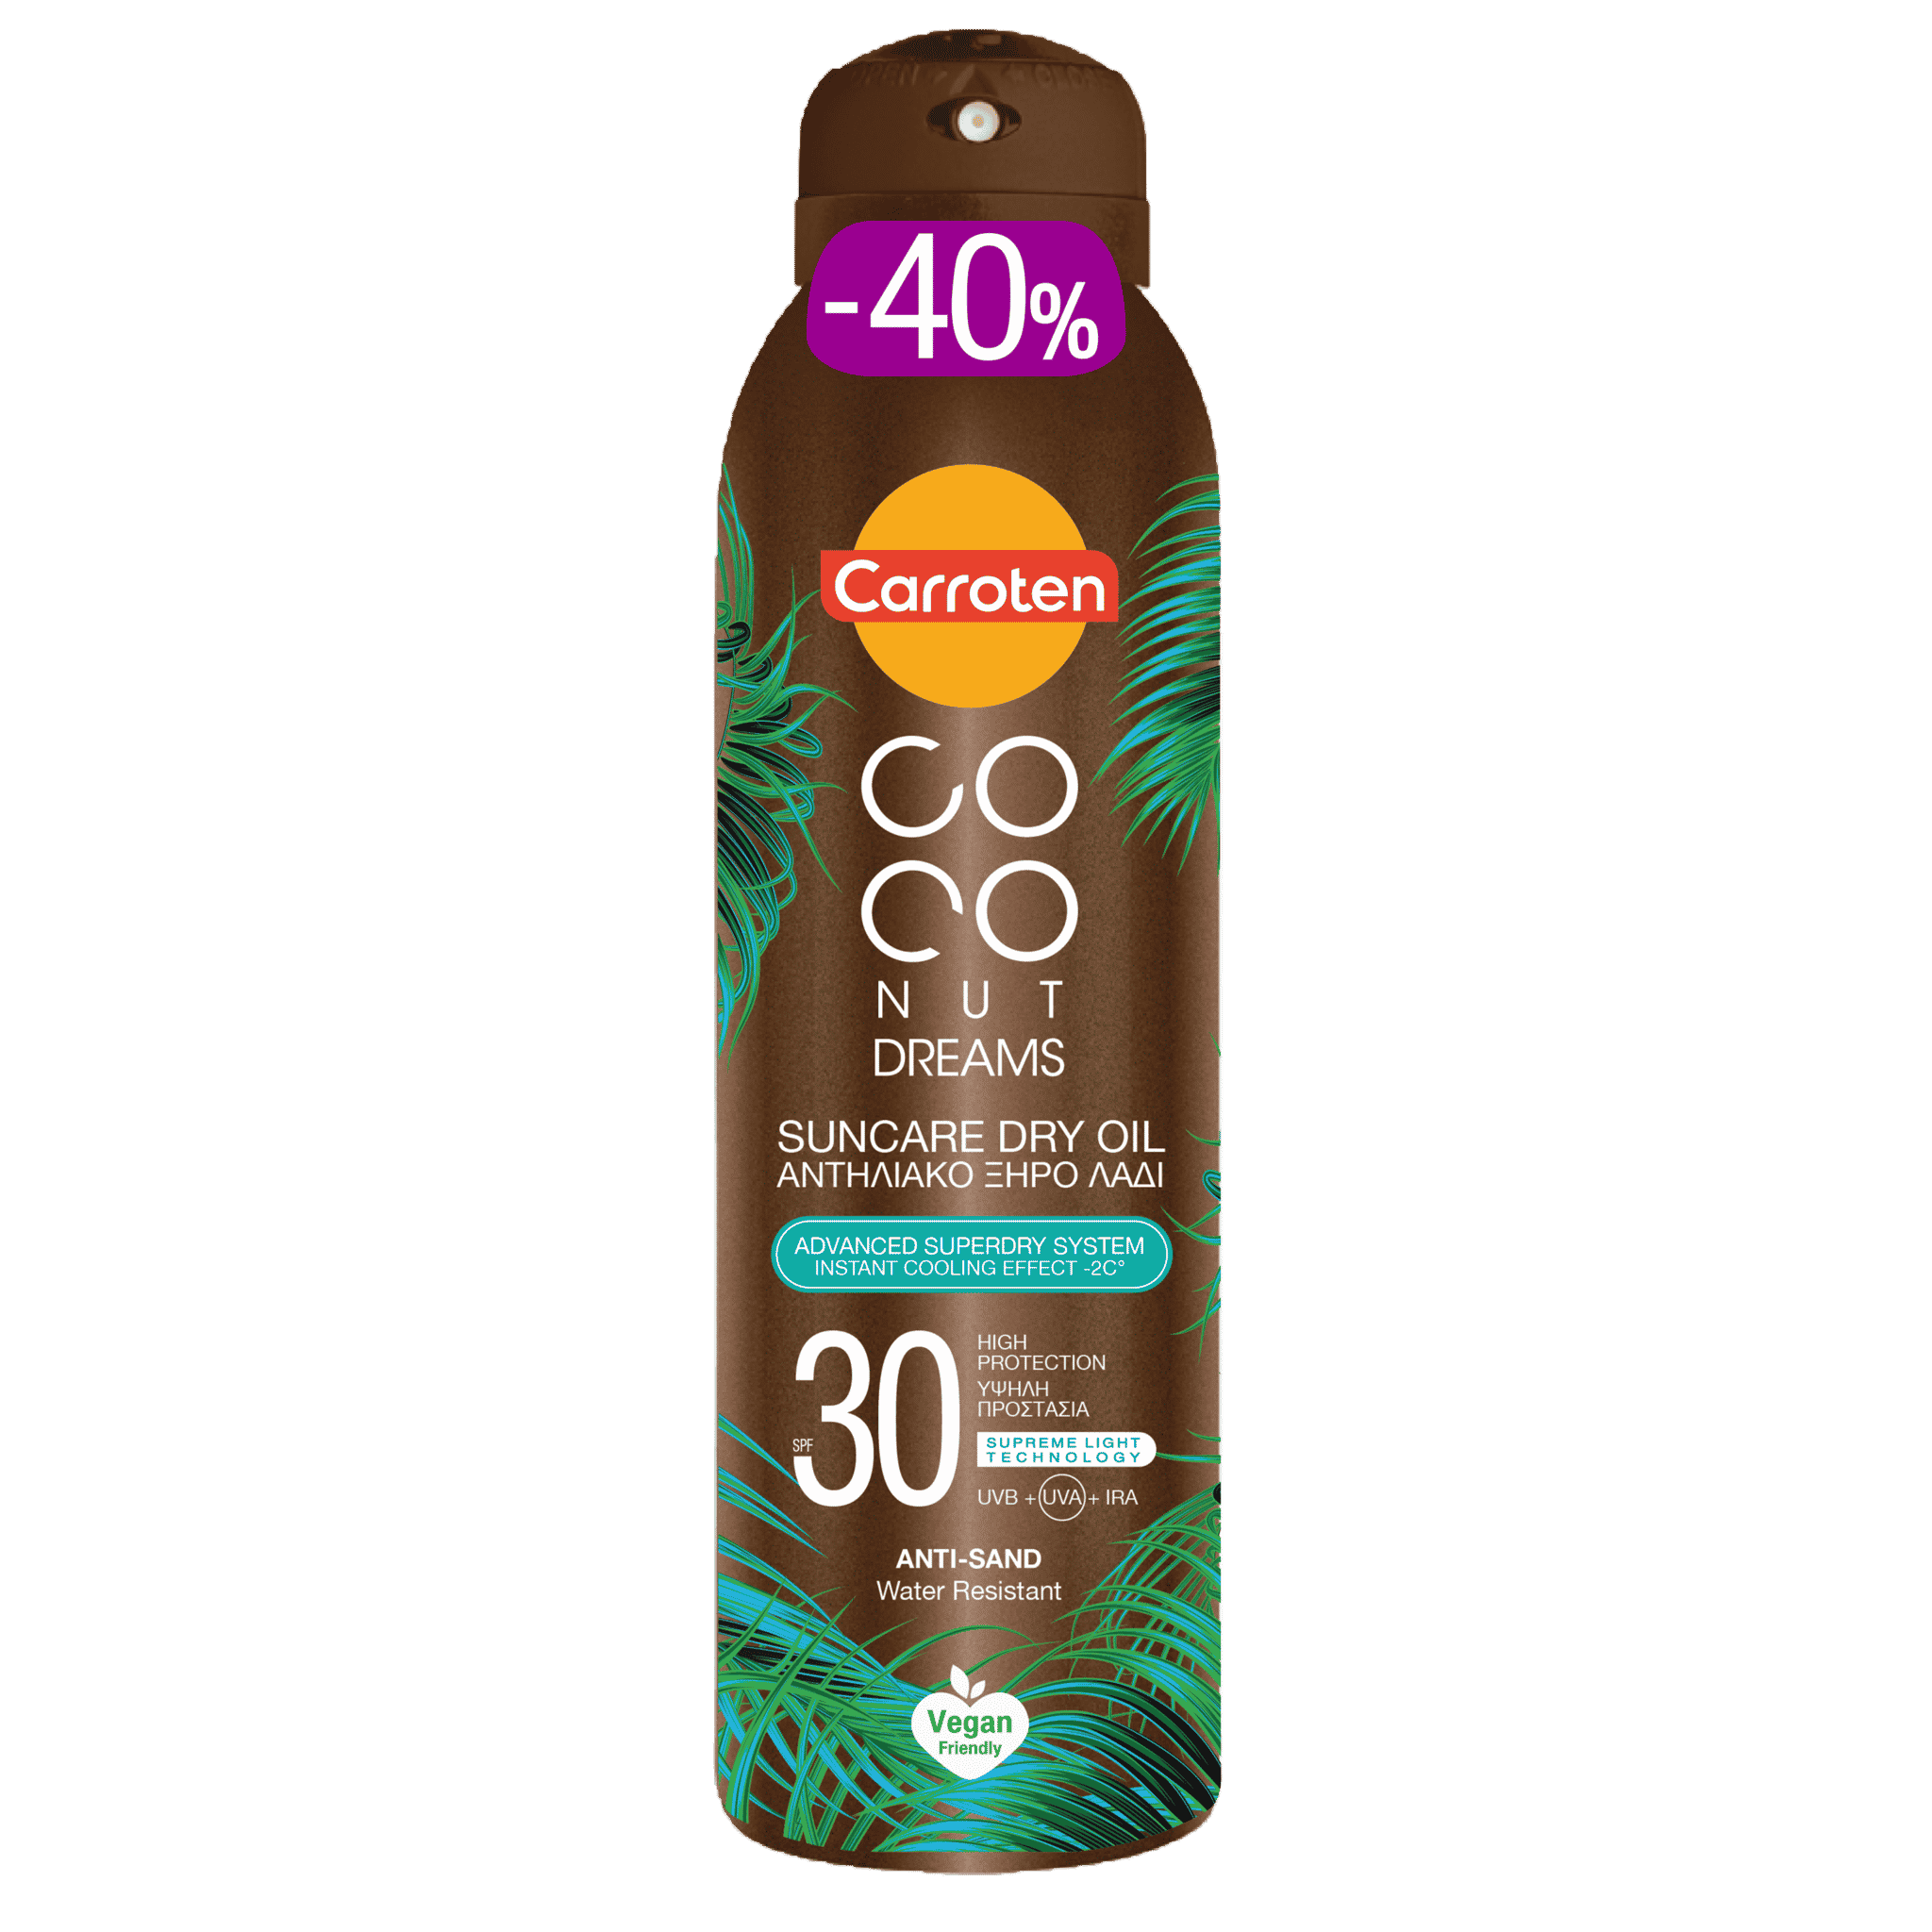 Carroten coconut dreams sunscreen dry oil SPF 30 150ml